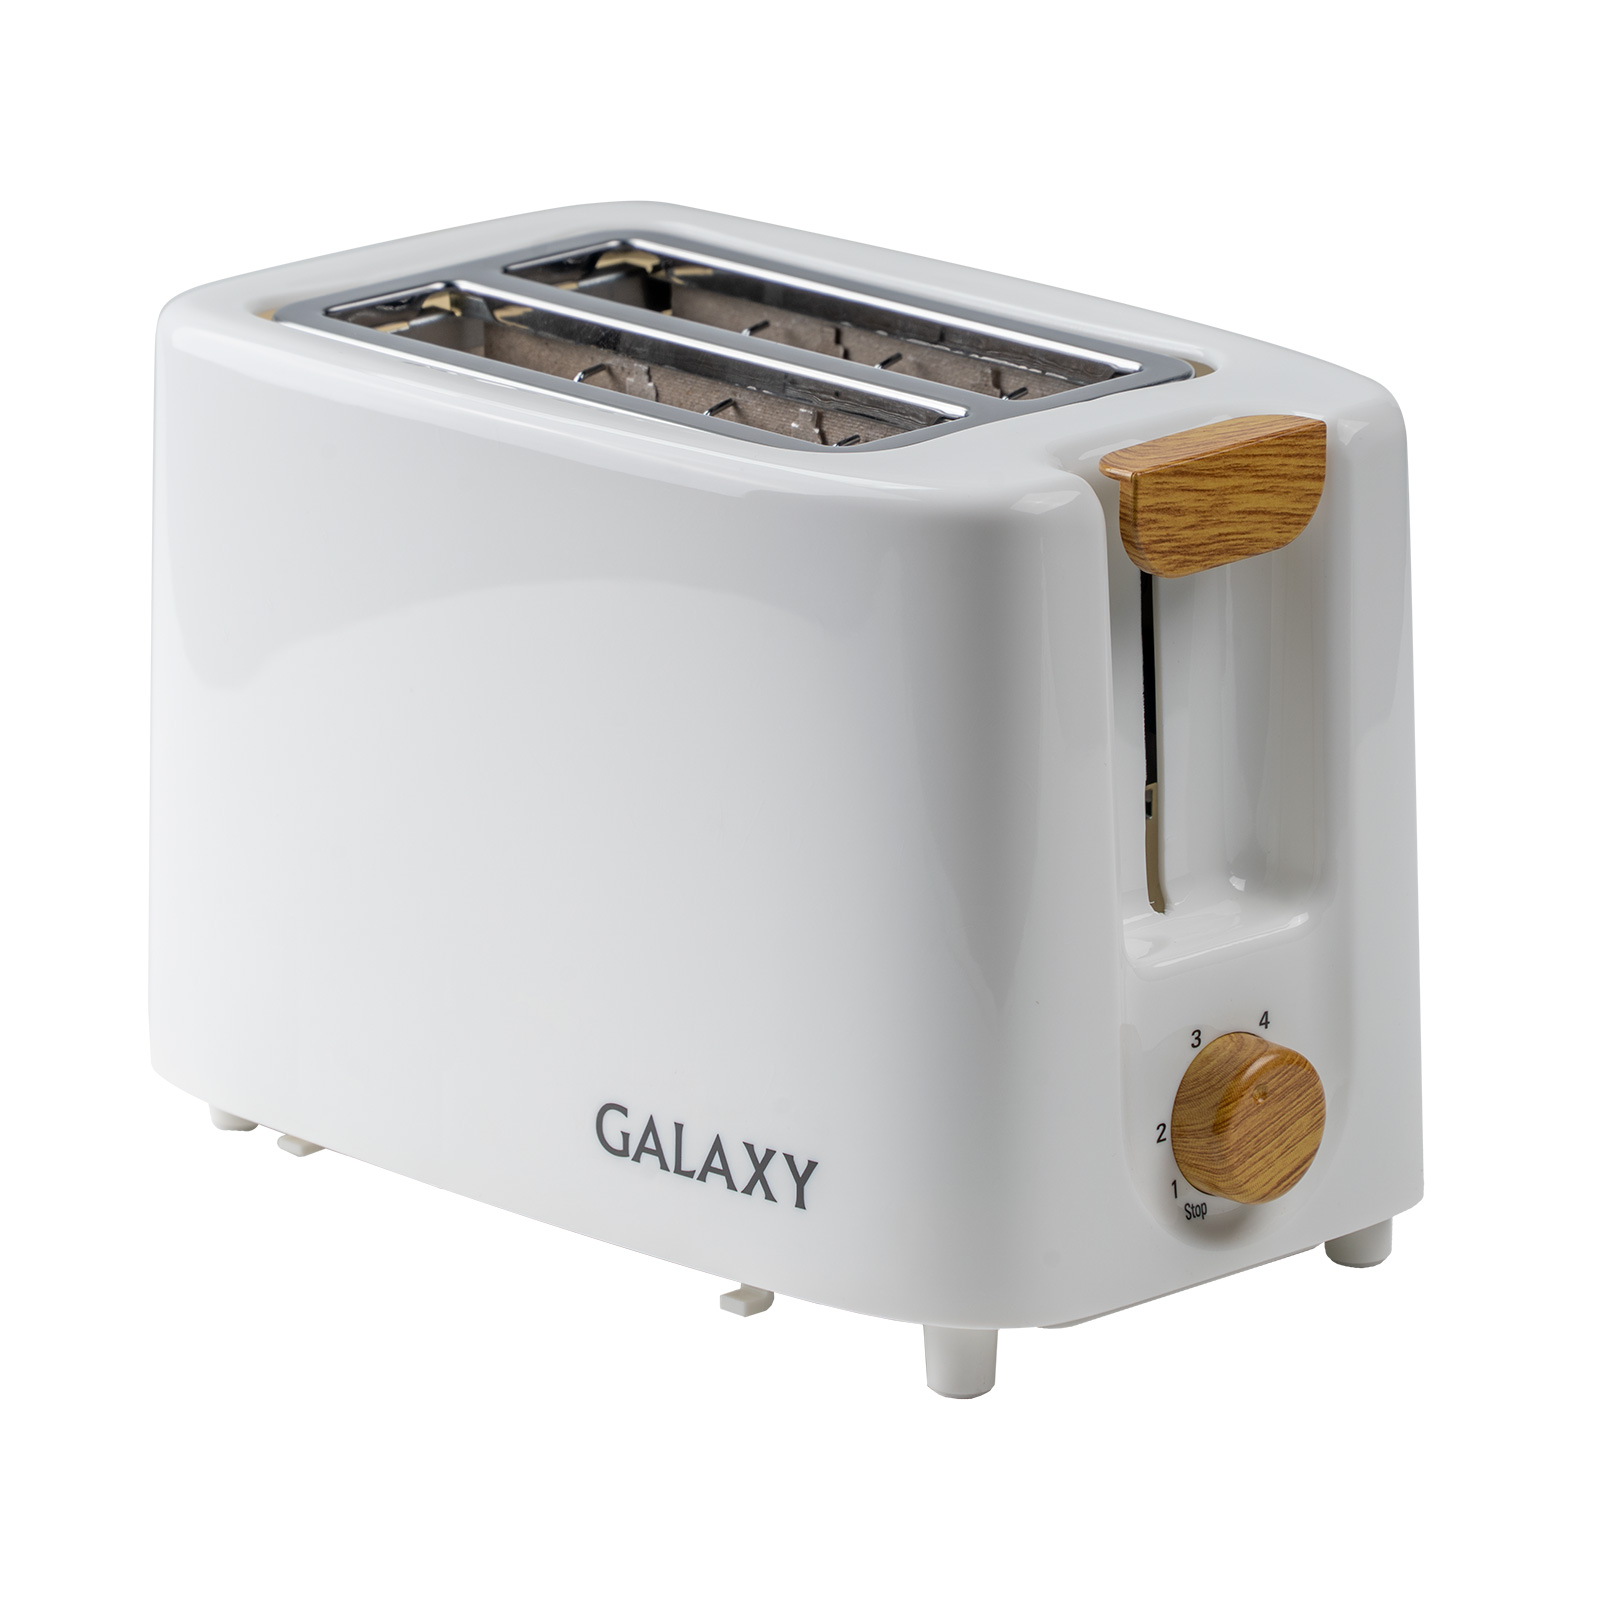 Тостер Galaxy LINE GL 2909 800 Вт, теплоизолир корпус, регулятор, съемн поддон (6шт)